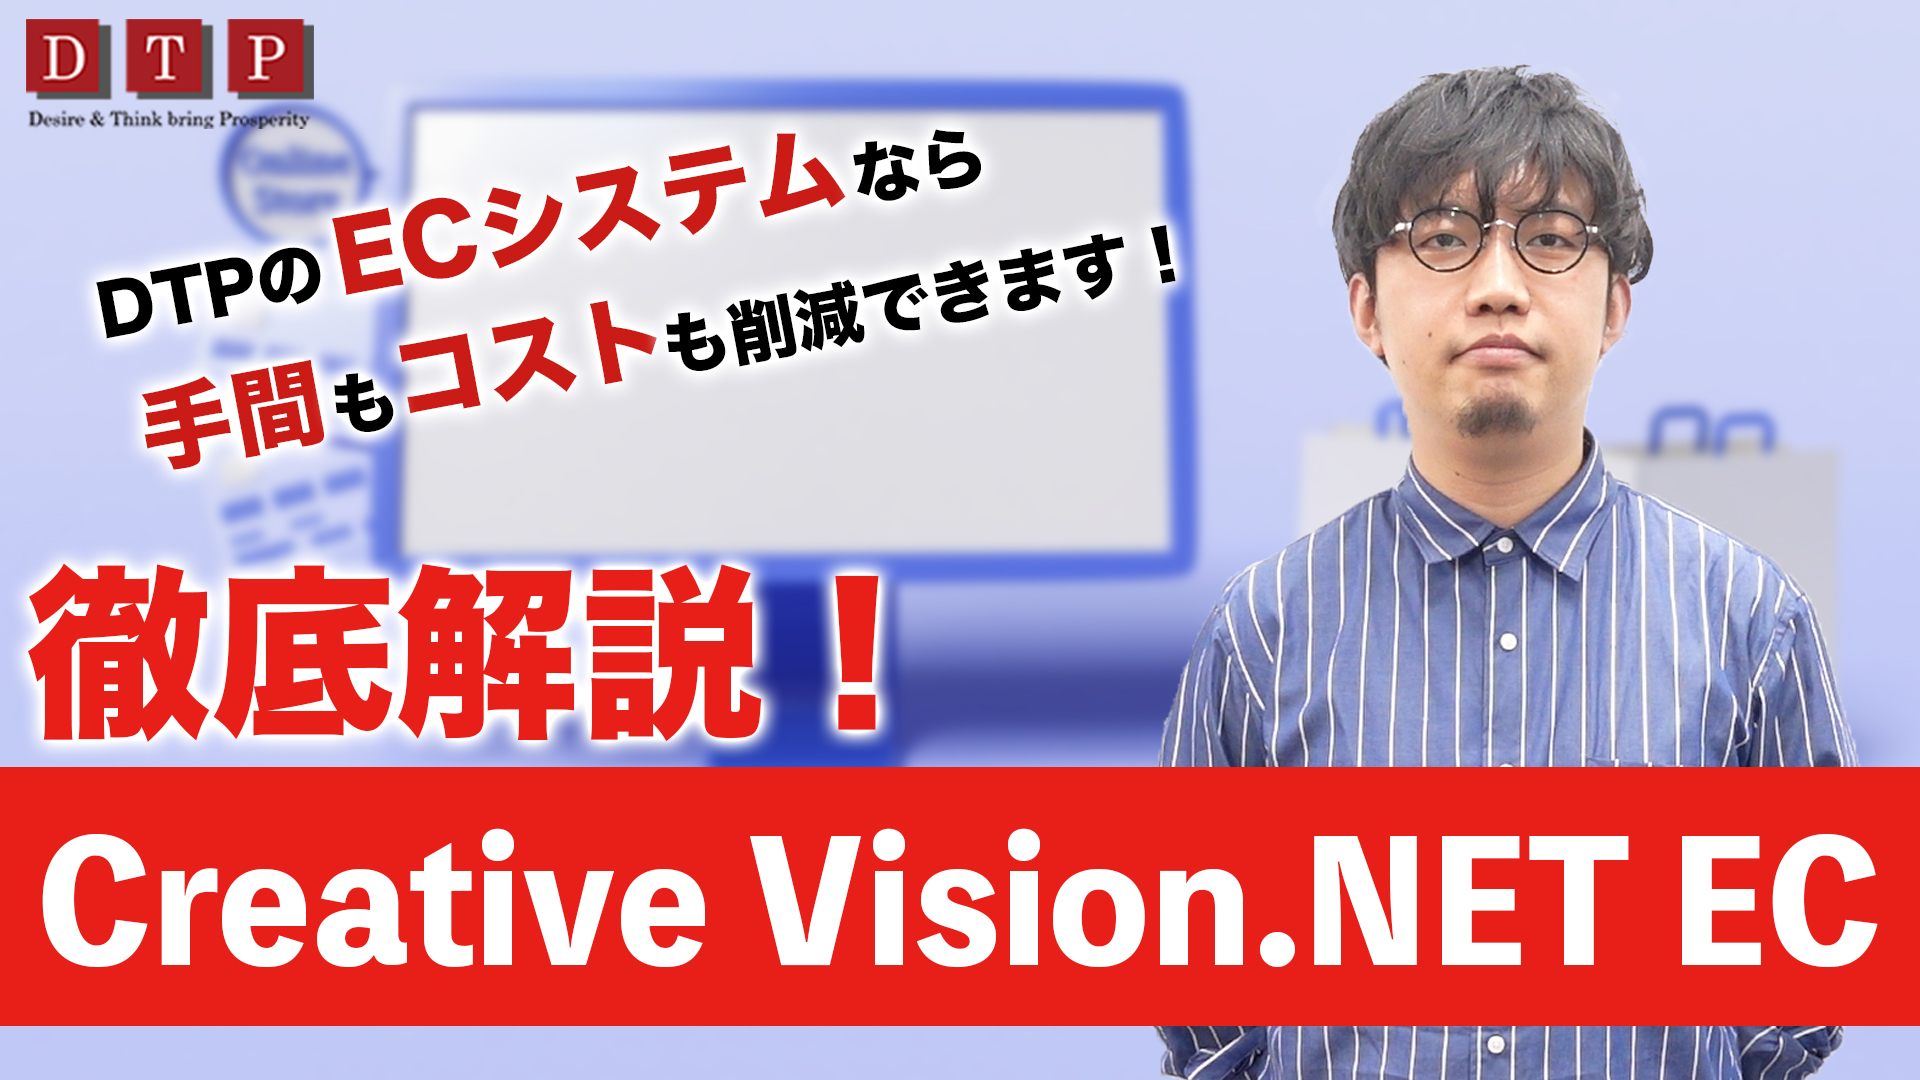 第22回【徹底解説】ECシステム CreativeVision.NET ECのご紹介！